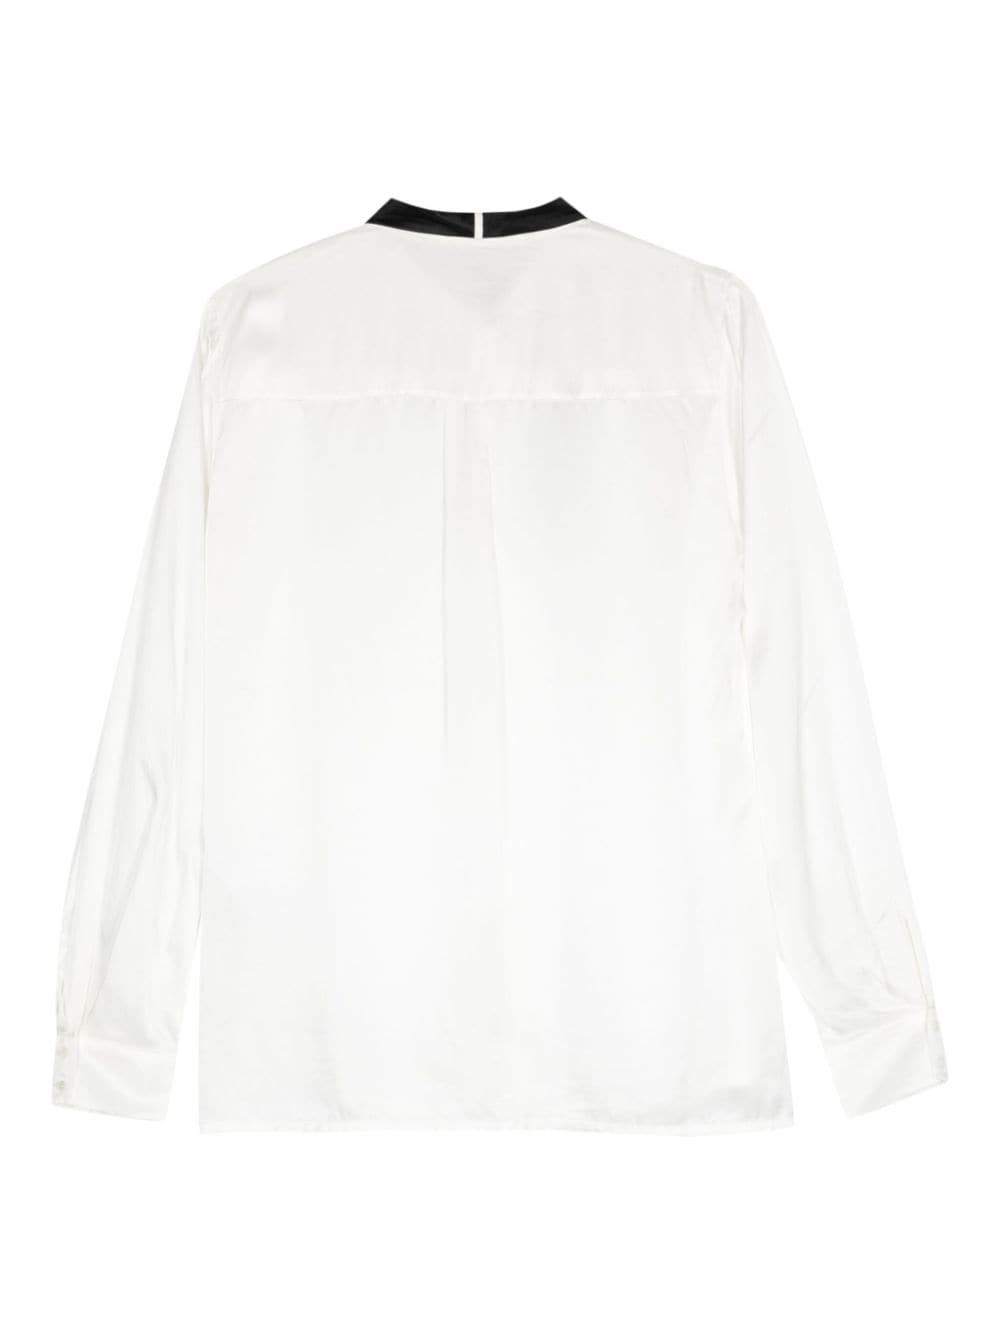 AllSaints Toni satijnen blouse - Wit